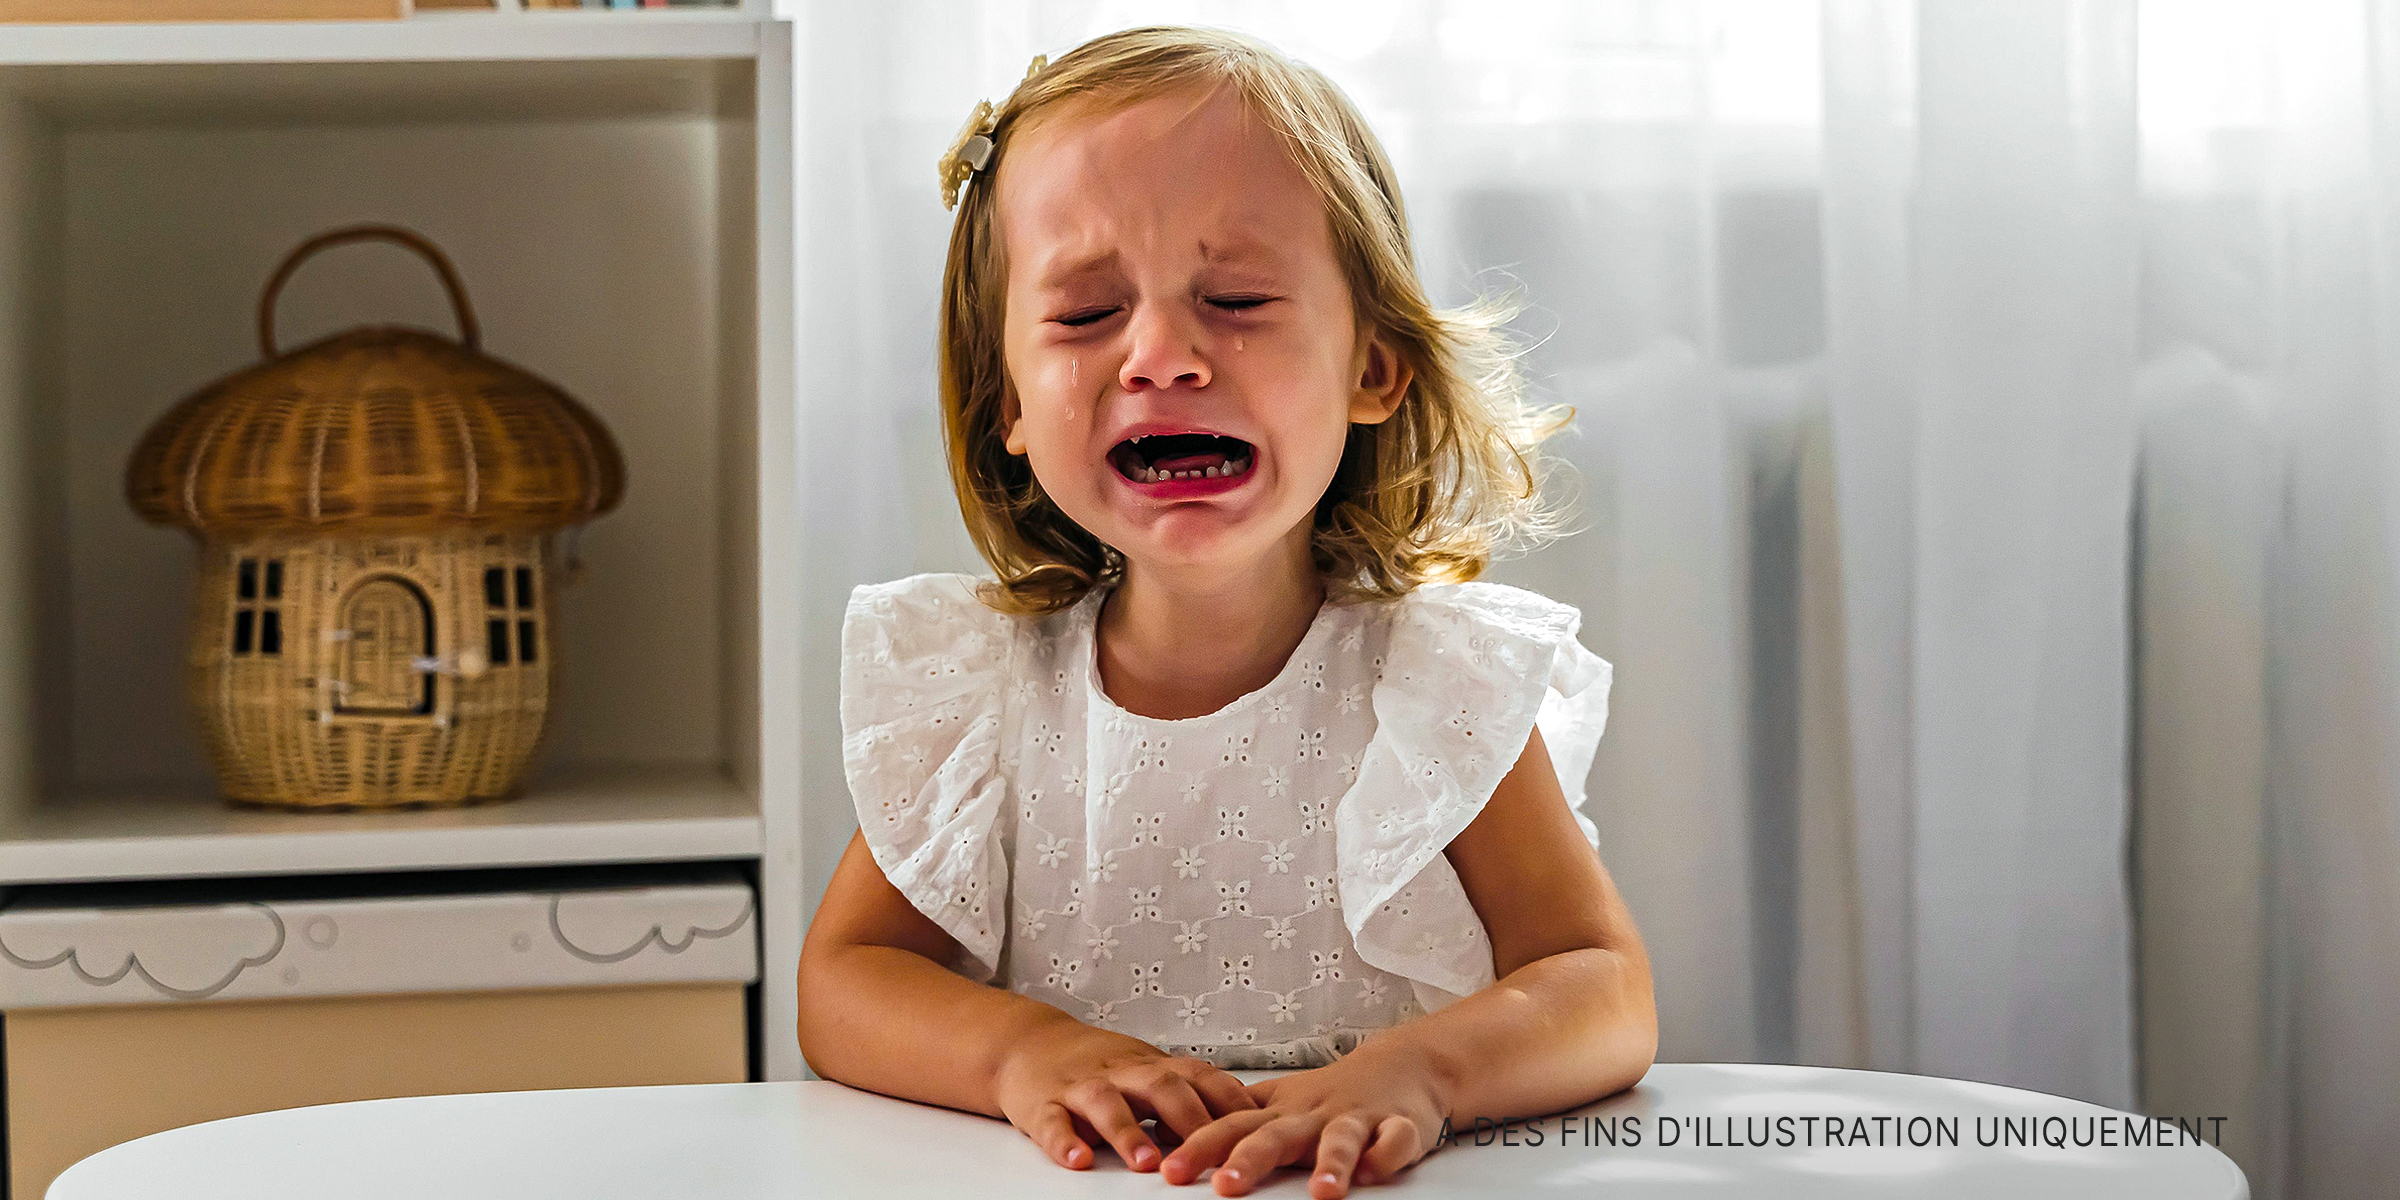 Une petite fille qui pleure | Source : Getty Images